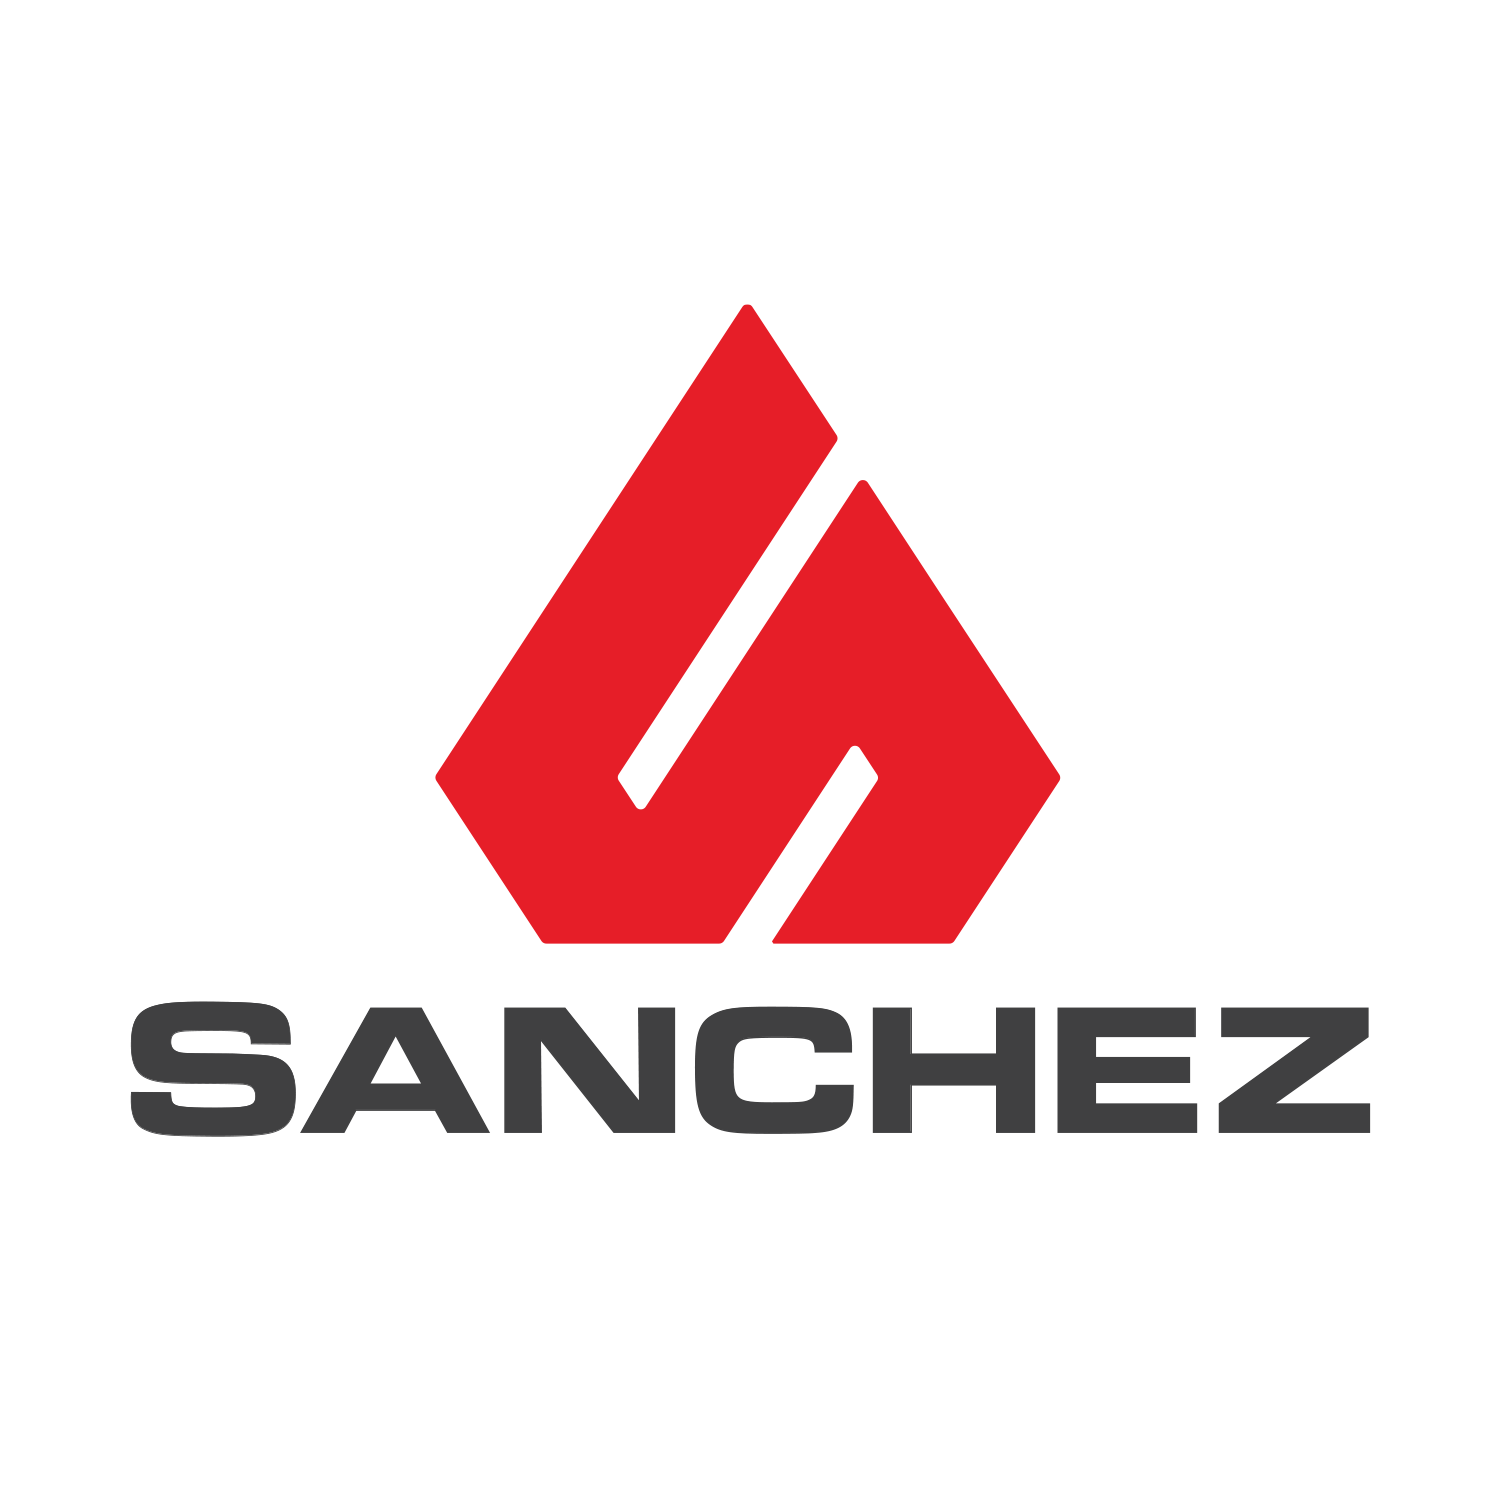 Sanchez Constructors Logo Design - Fort Collins, CO Financial Services Company